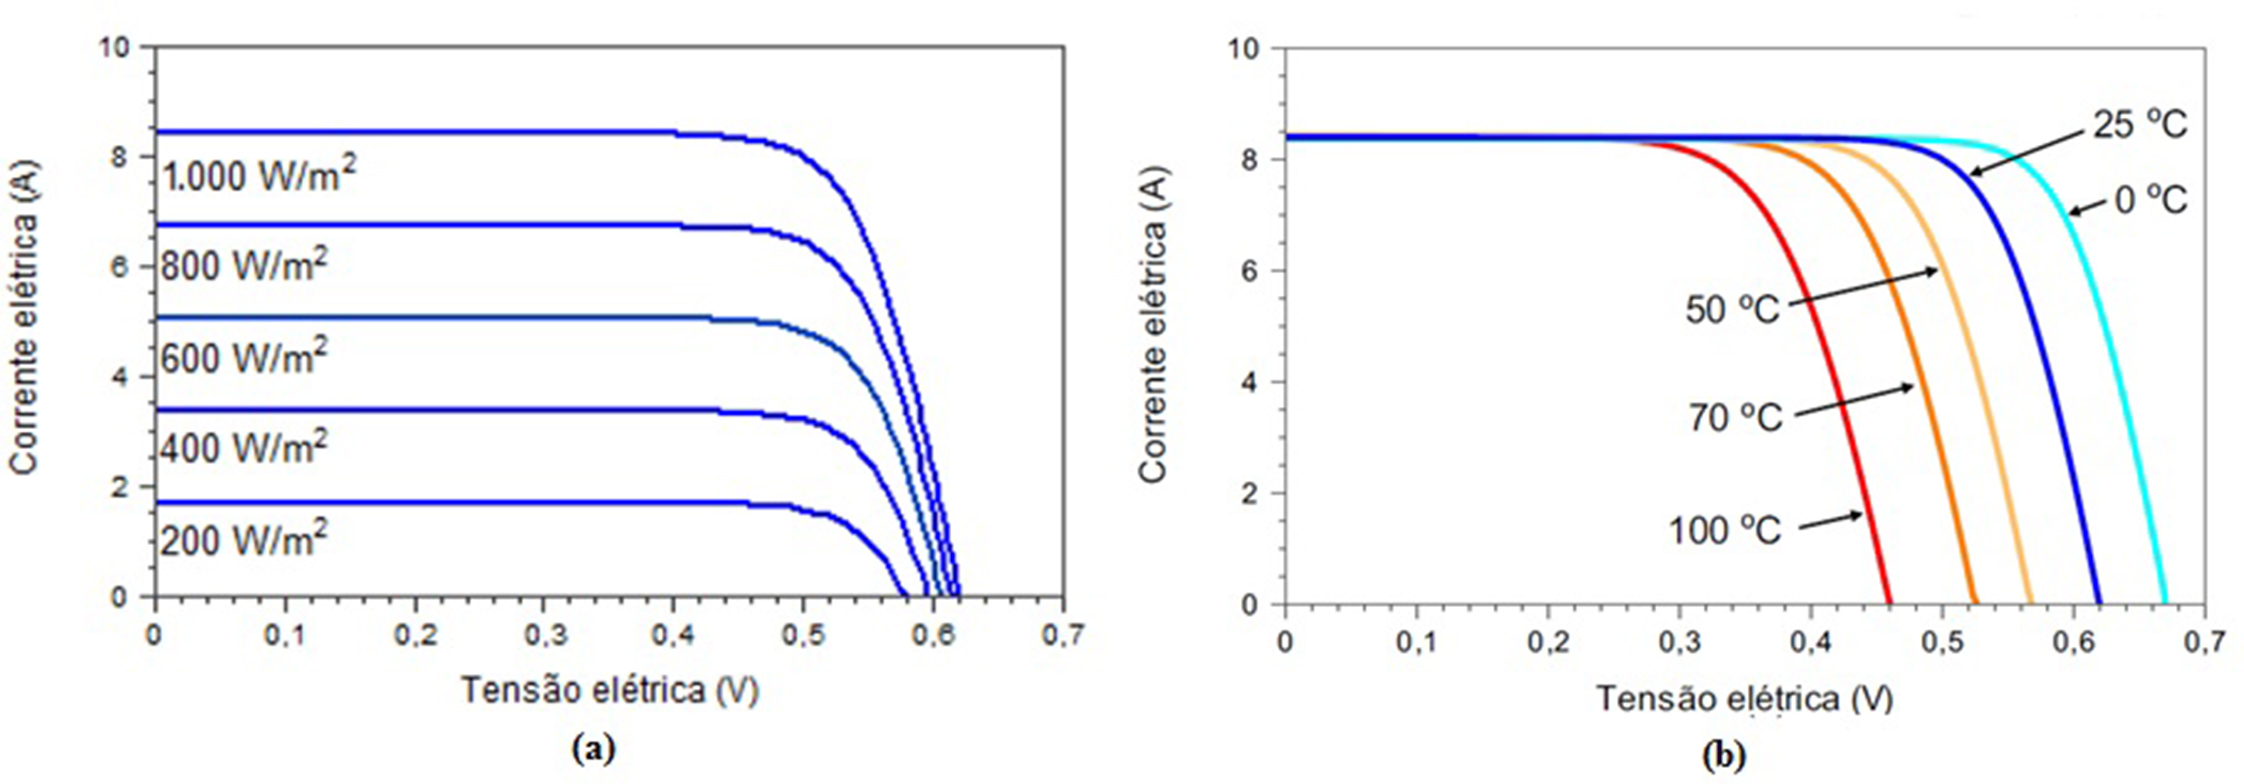  Influência da irradiância (a) e da temperatura (b) na curva I-V de uma célula FV